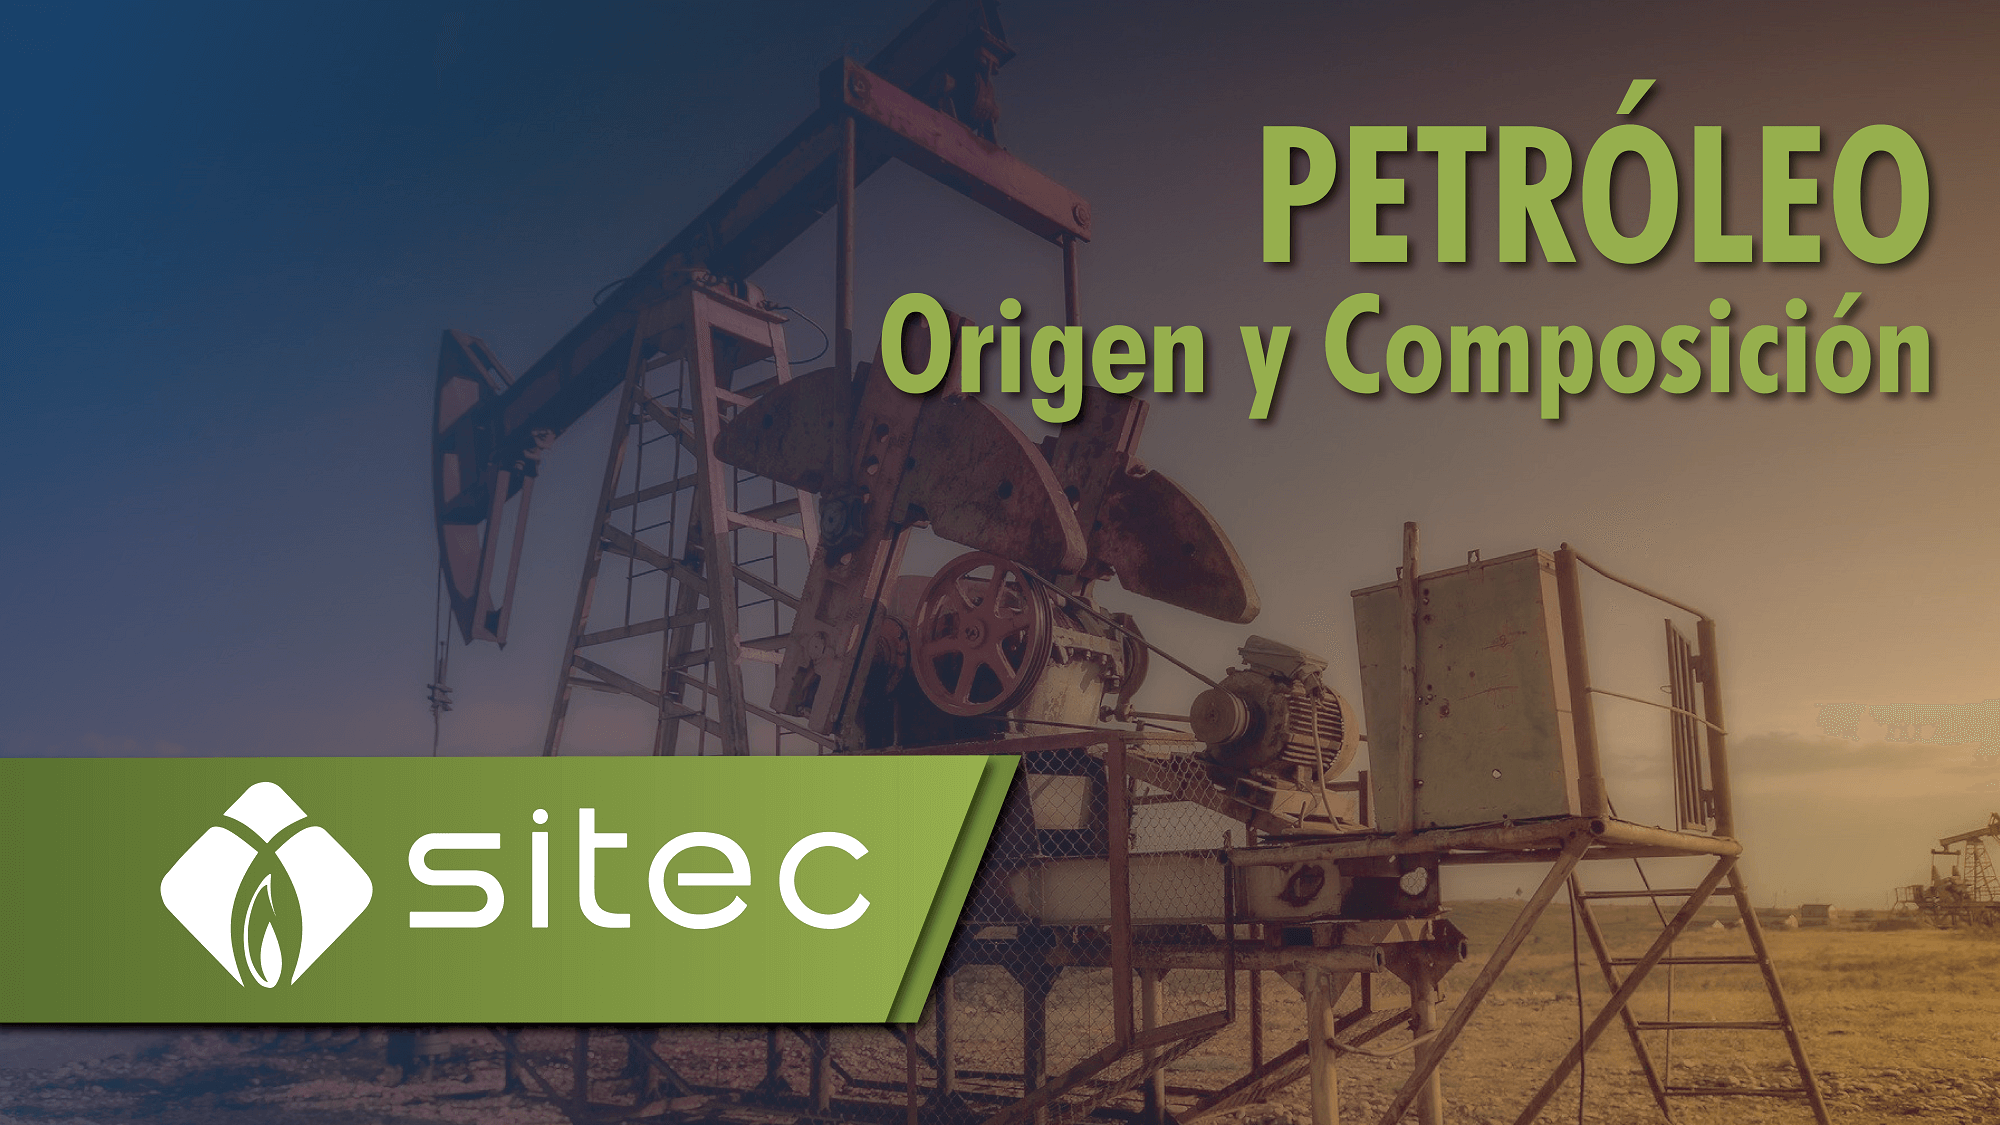 Petroleo Origen y Composición